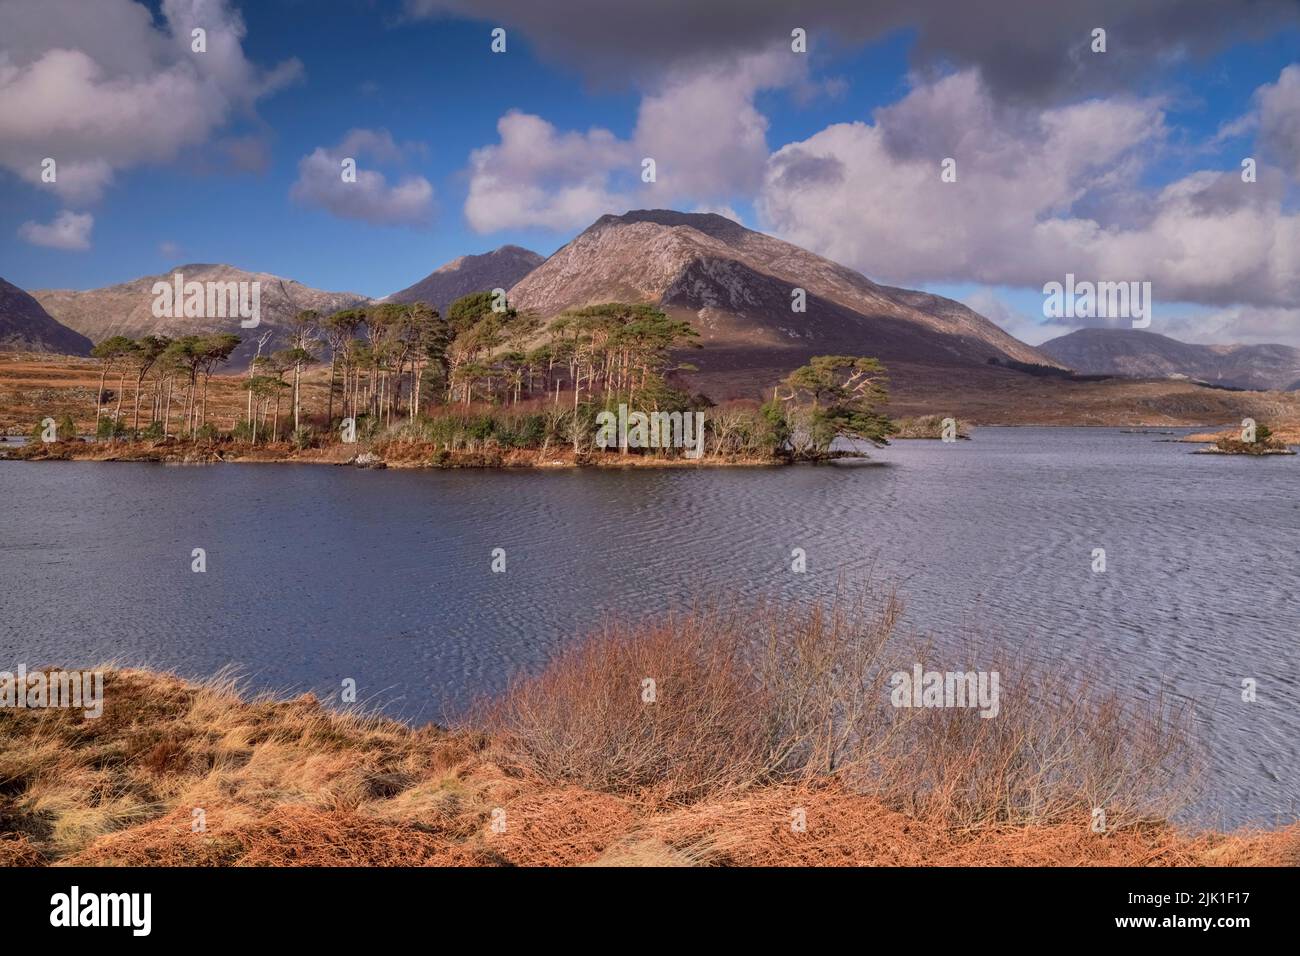 Irlanda, Condado de Galway, Connemara, Derryclare Lough visto desde Pine Island Viewpoint con la cadena montañosa Twelve Bens al fondo. Foto de stock